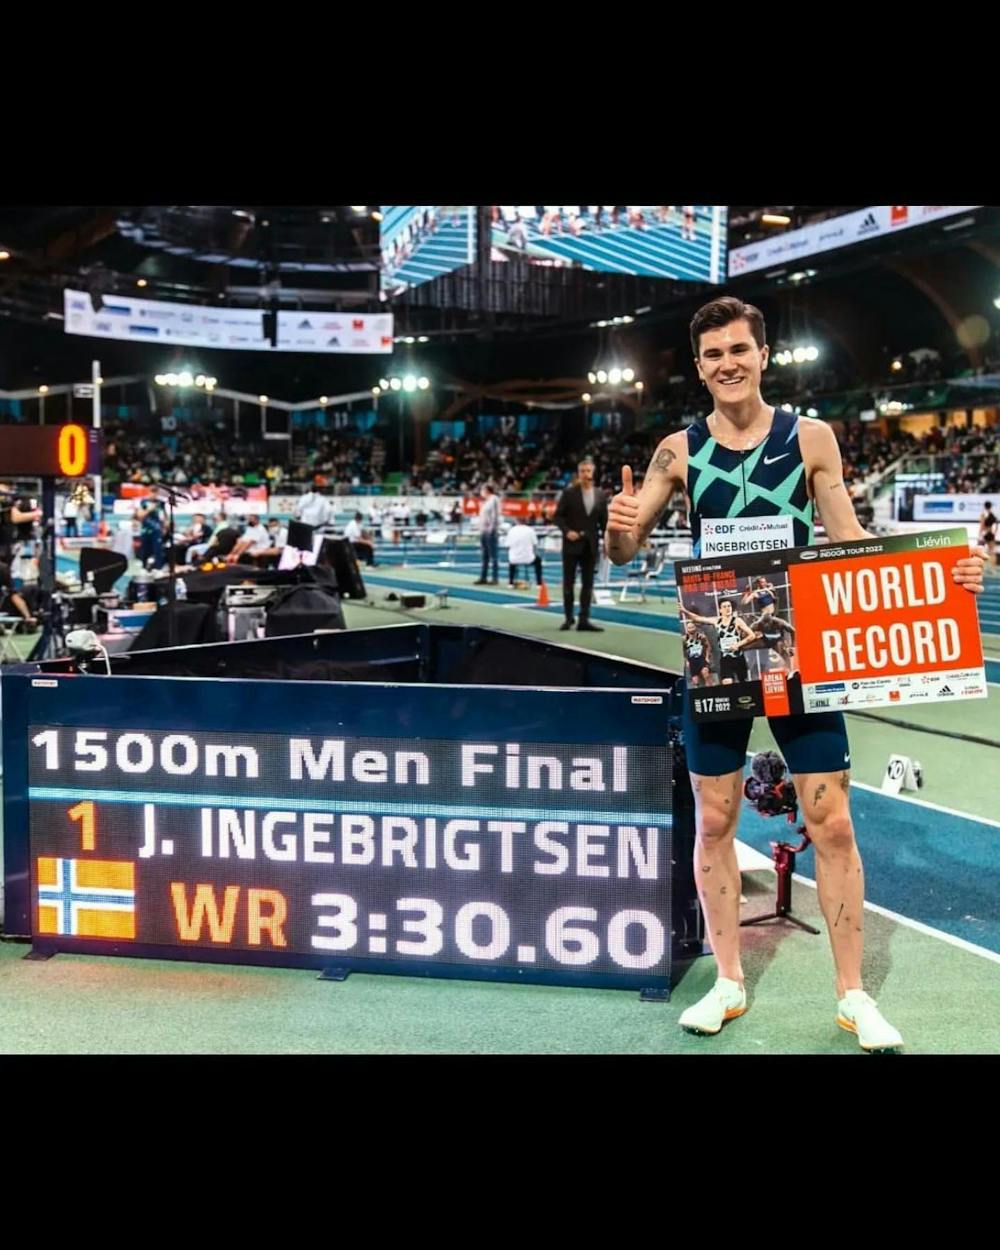 Παγκόσμιο ρεκόρ στα 1500μ. κλειστού στίβου από τον Ingebrigtsen! runbeat.gr 